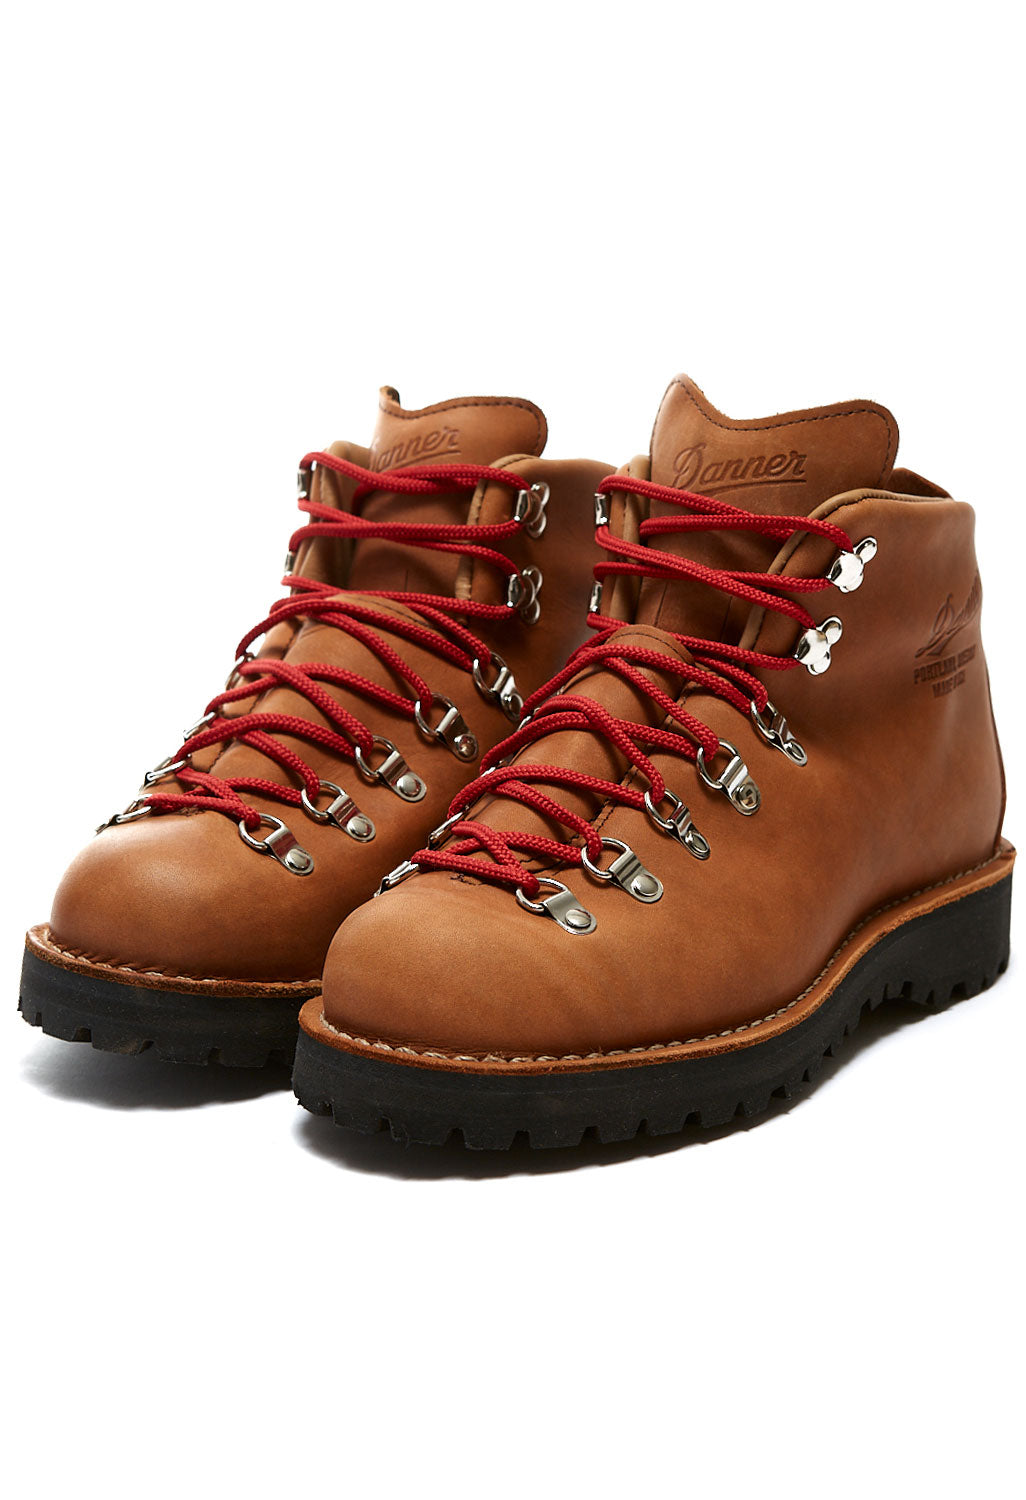 Danner Mountain Light Men's Boots - Cascade Clovis